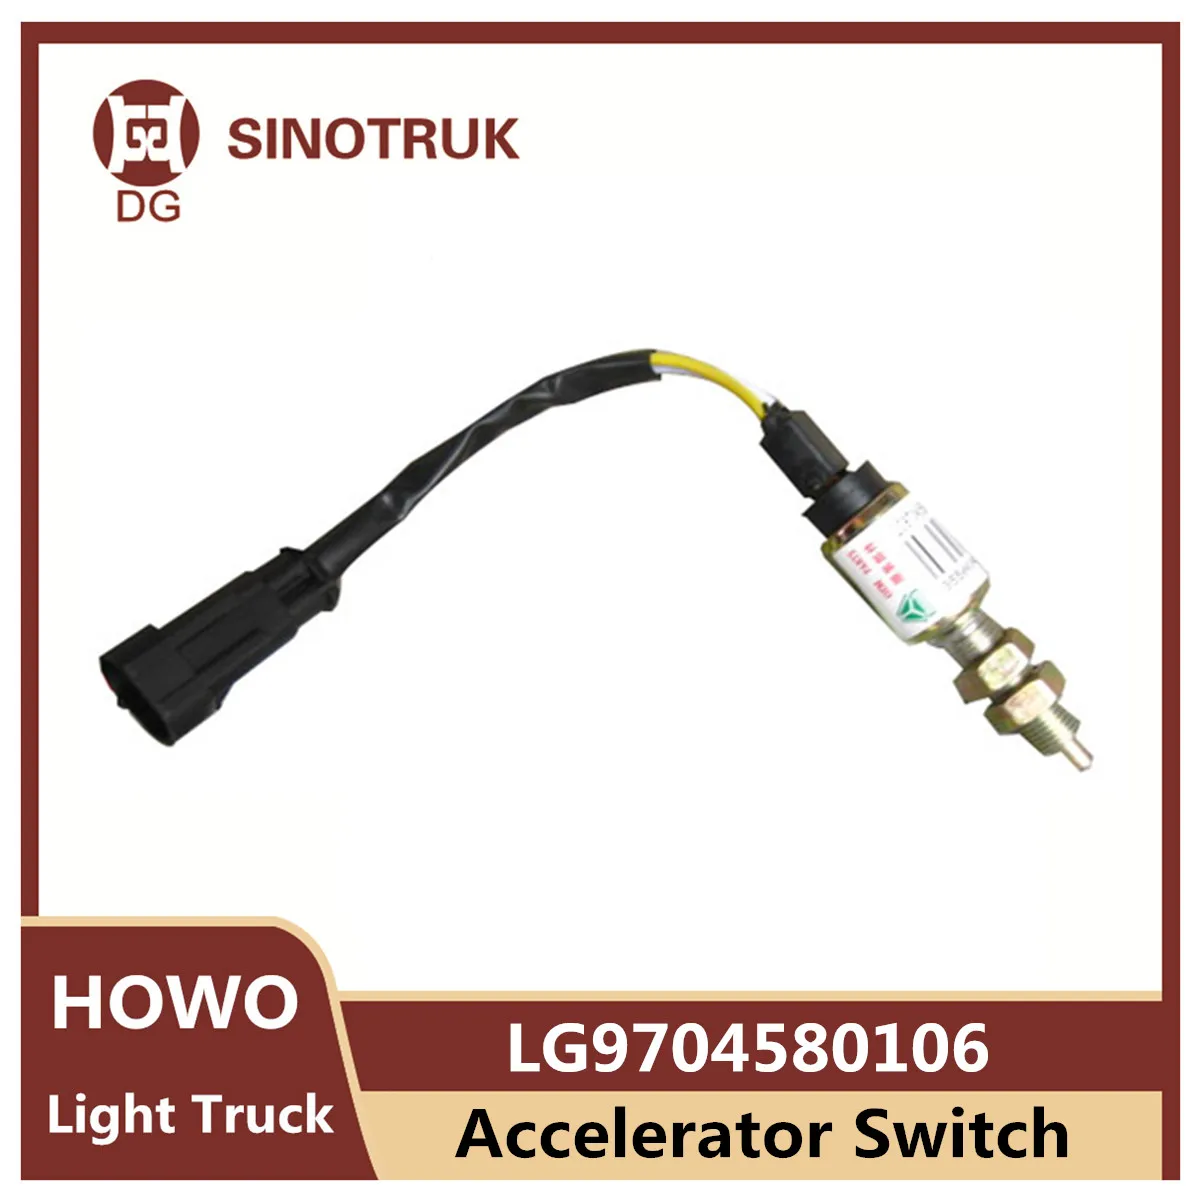 

Переключатель акселератора LG9704580106 для Sinotruk Howo светильник, переключатель сцепления грузовика, оригинальные автозапчасти